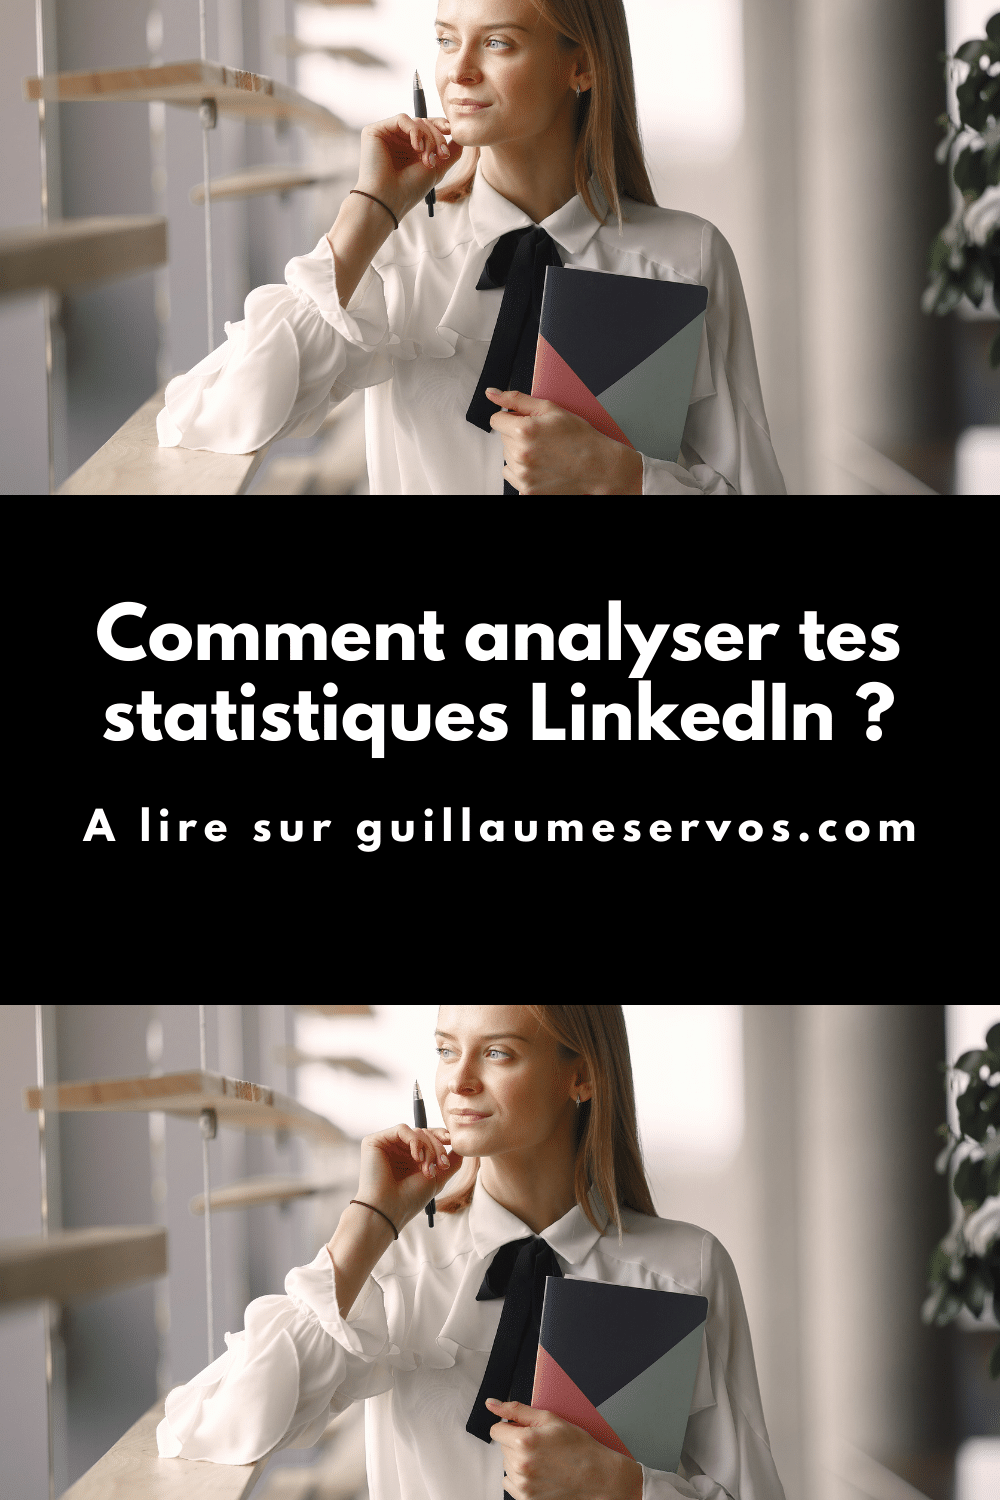 Tu cherches des données pour mesurer la performance de ton profil LinkedIn ? As-tu déjà jeté un coup d’œil sur tes statistiques ?